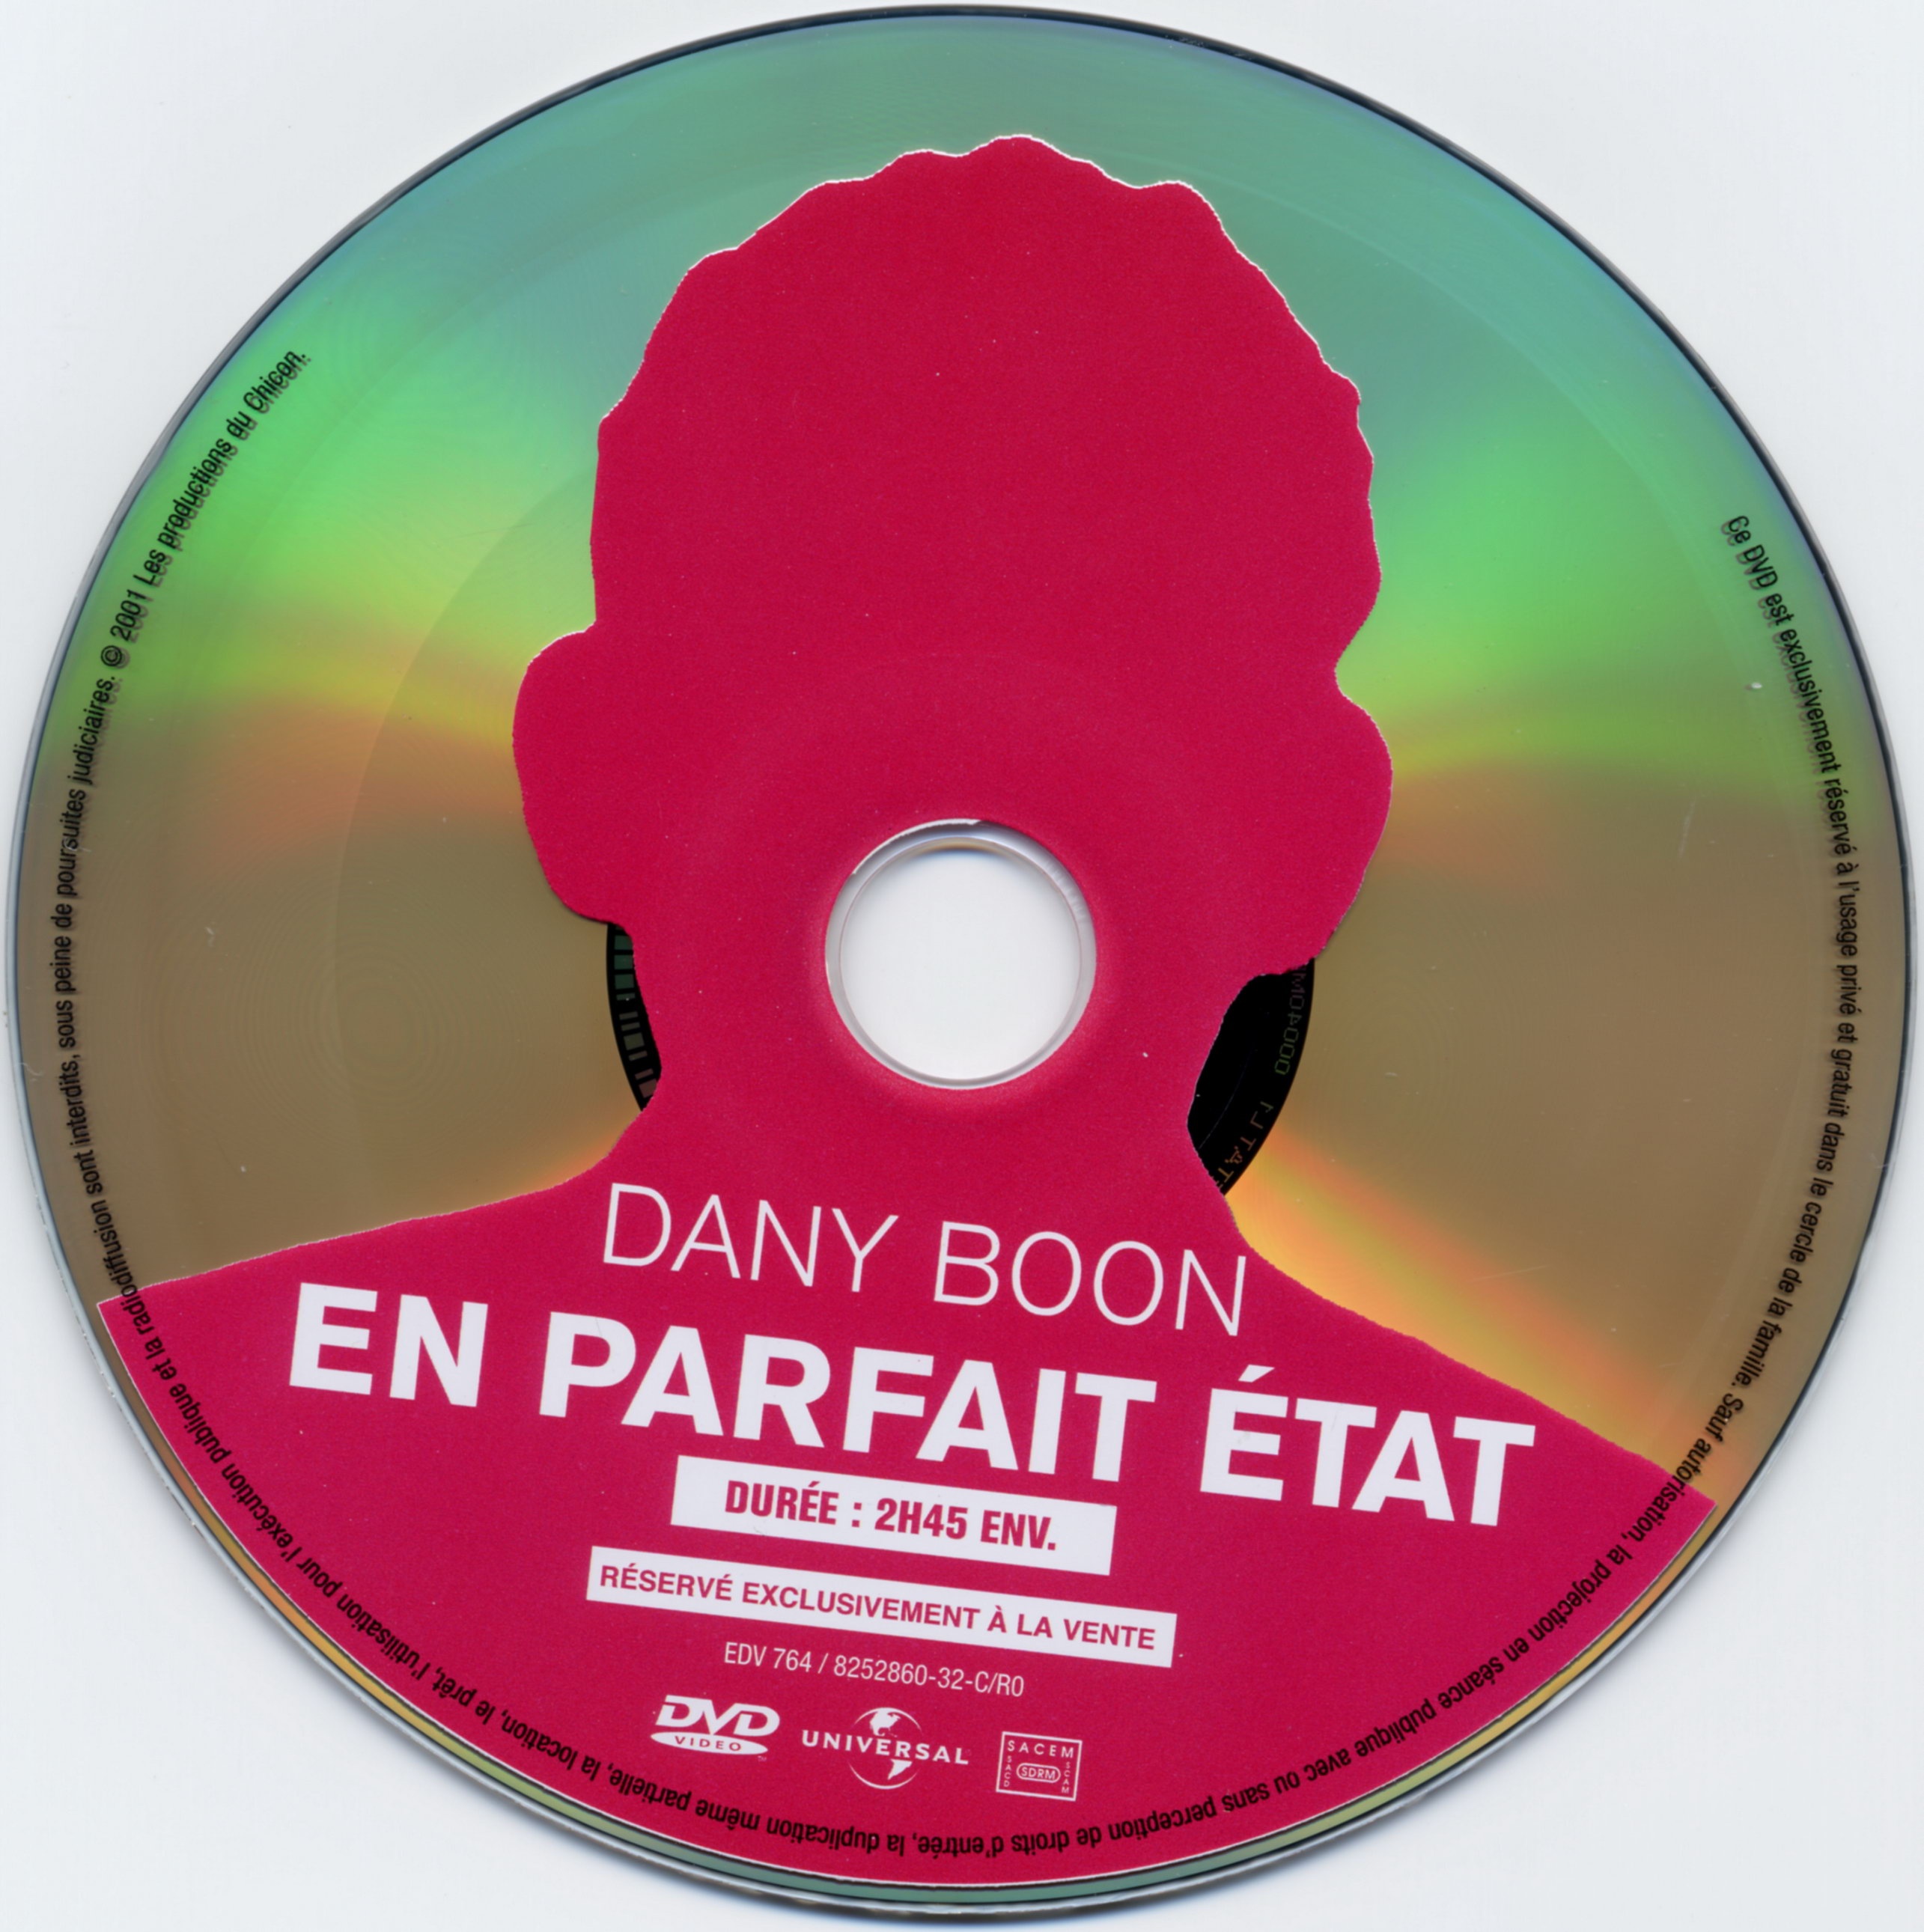 Dany Boon en parfait etat v2